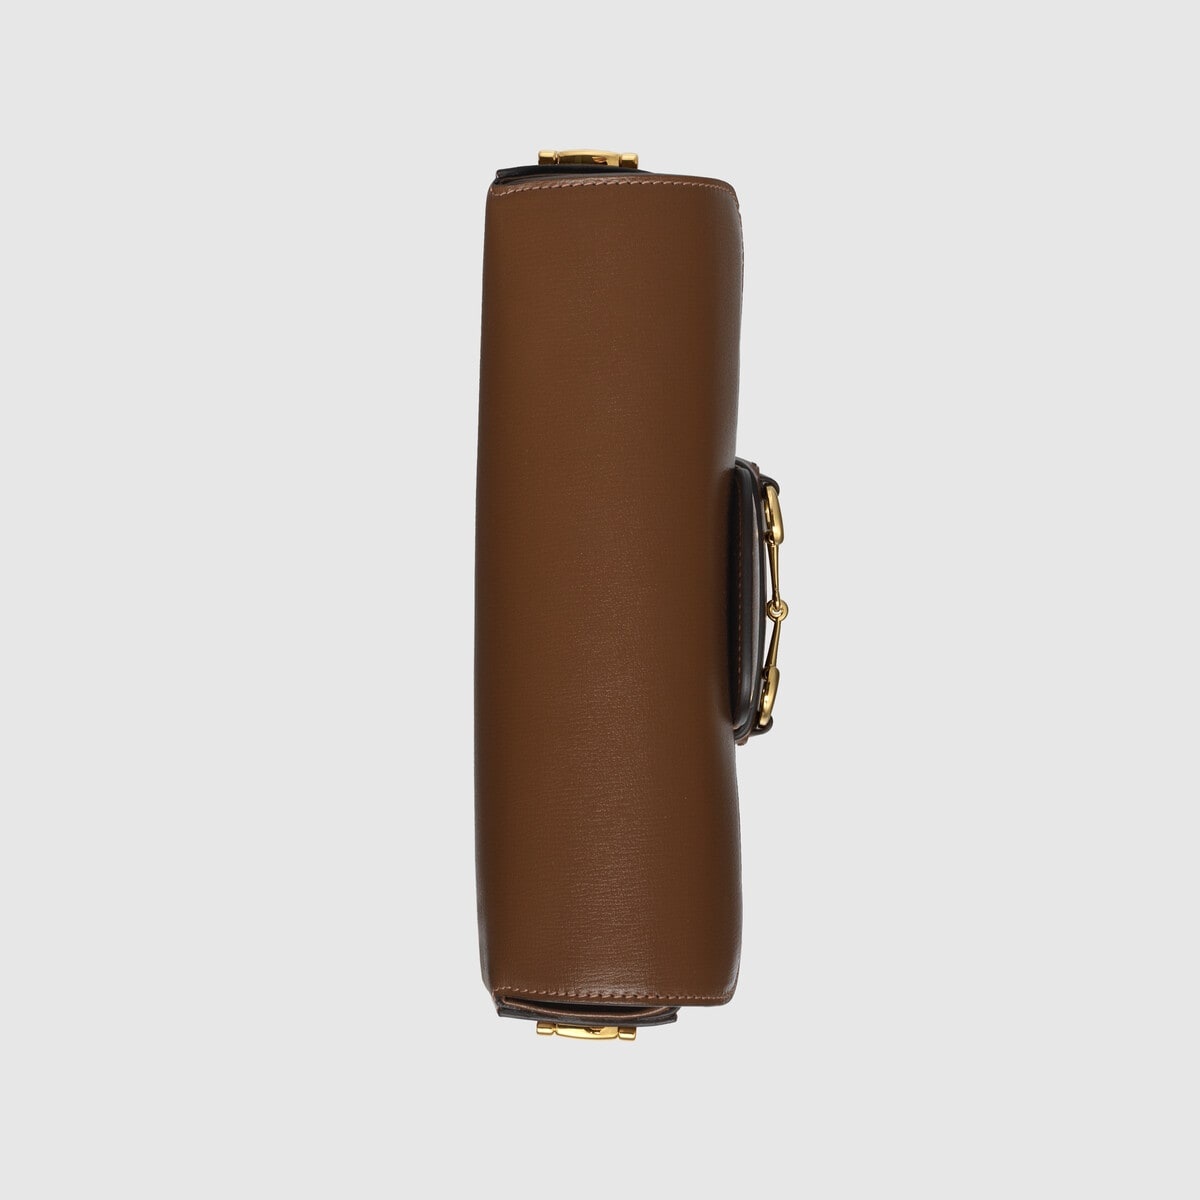 Gucci Horsebit 1955 small shoulder bag - 7